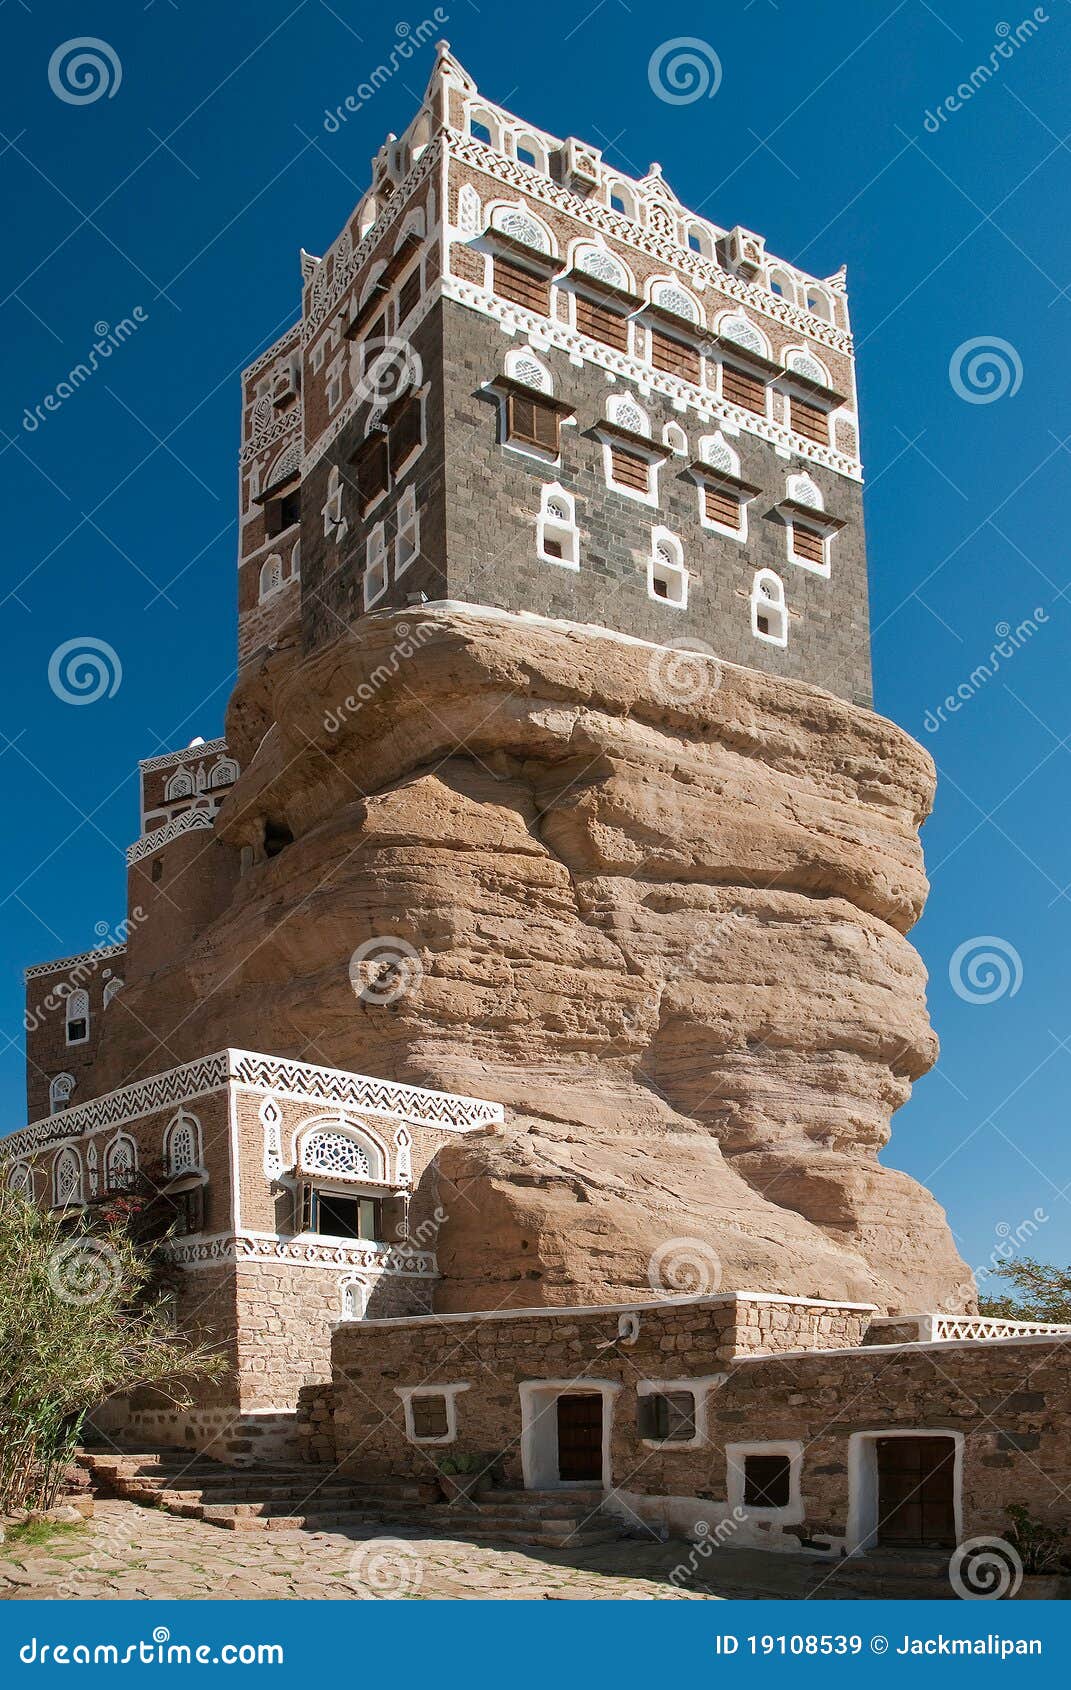 dar al hajar palace in wadi dhahr yemen